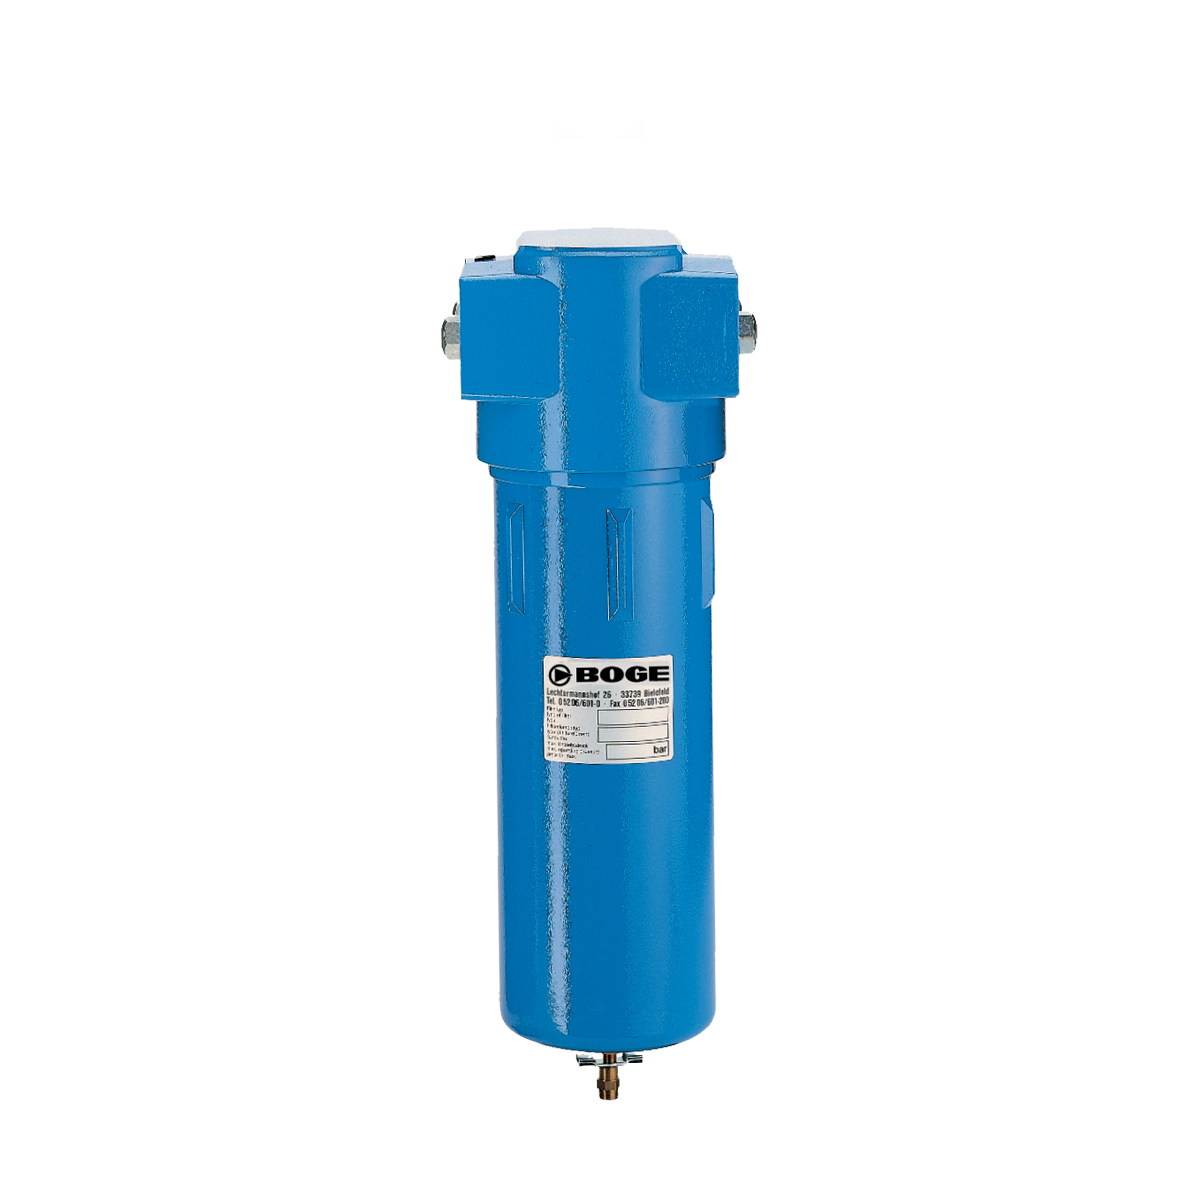 BOGE Compressors | High Pressure Activated Carbon Filter (50 bar)